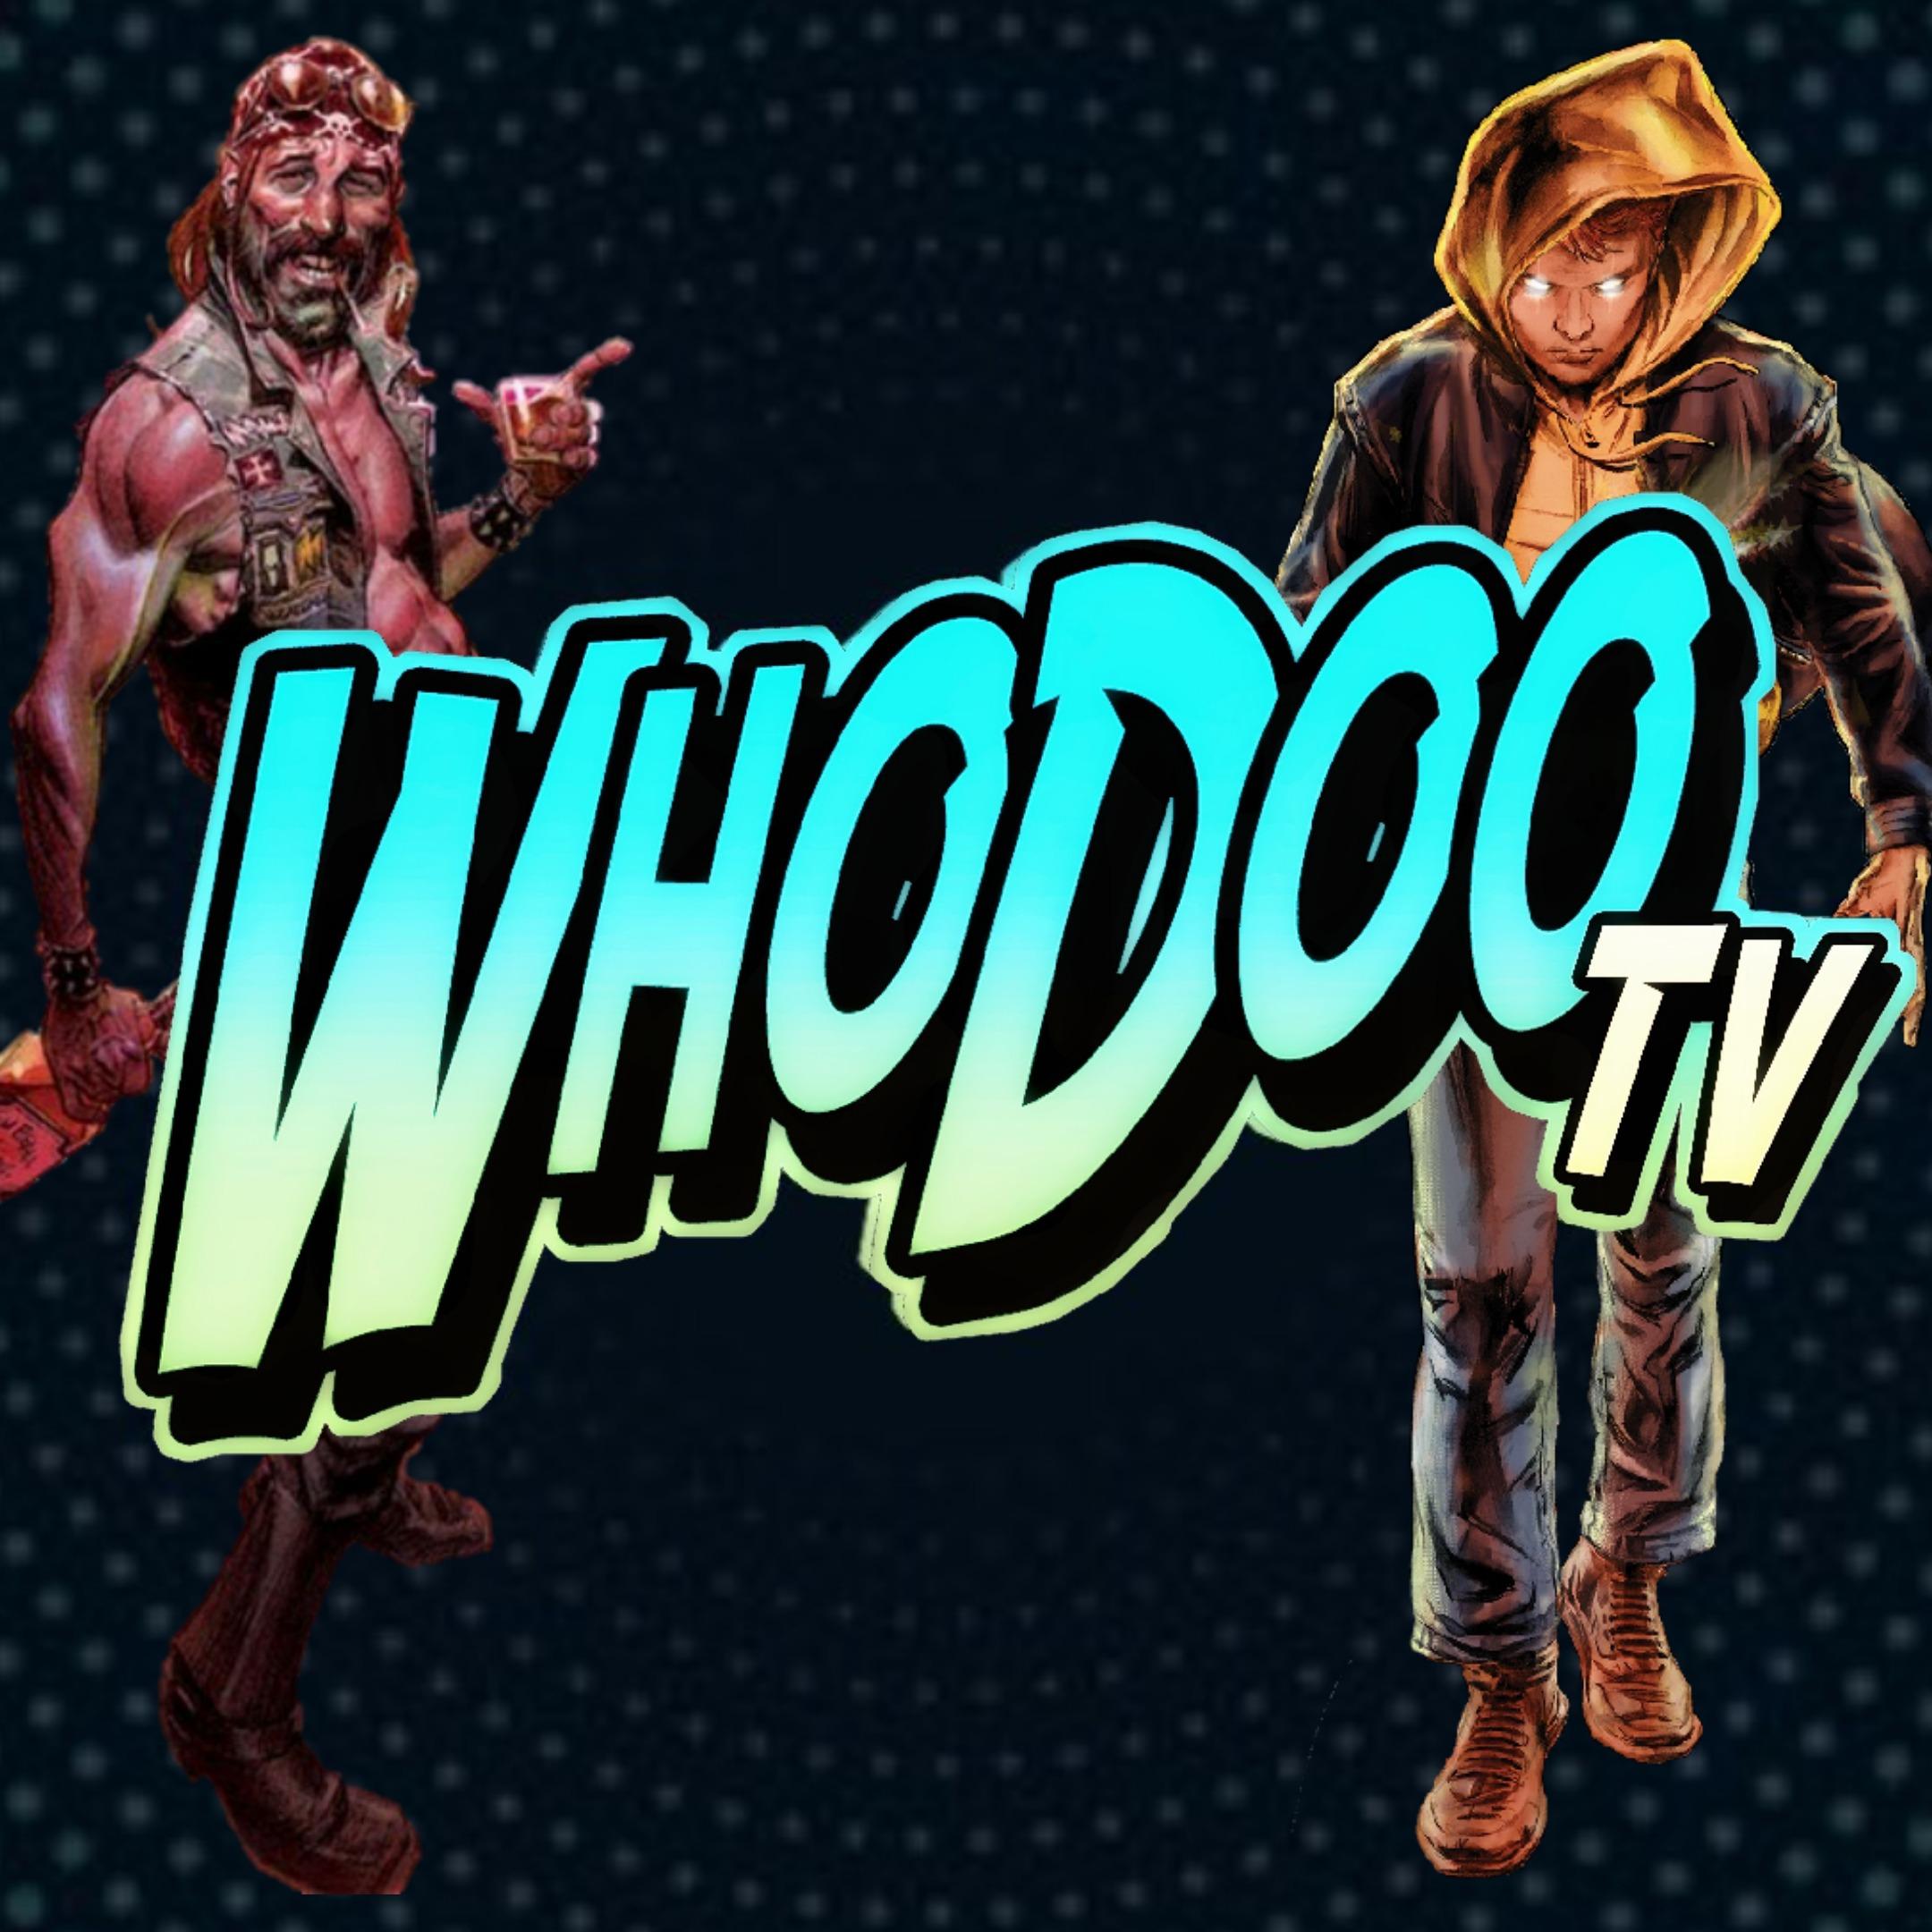 WhoDooTV